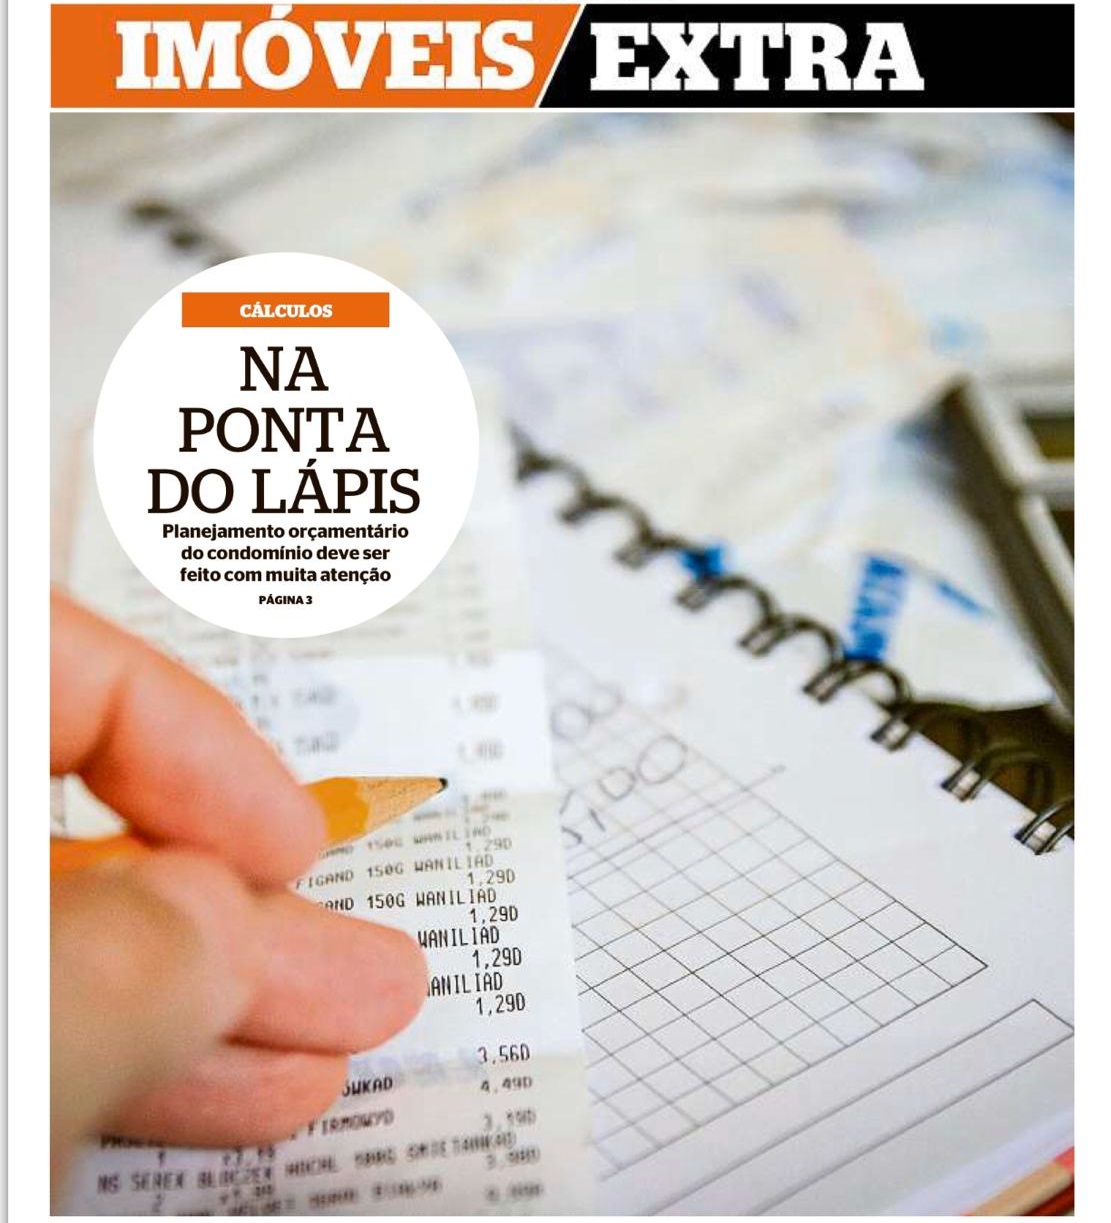 Foto de capa da matéria do jornal o Dia com um lápis e uma nota fiscal para a pauta "Previsão orçamentária do condomínio sem erros" do Blog da Estasa.